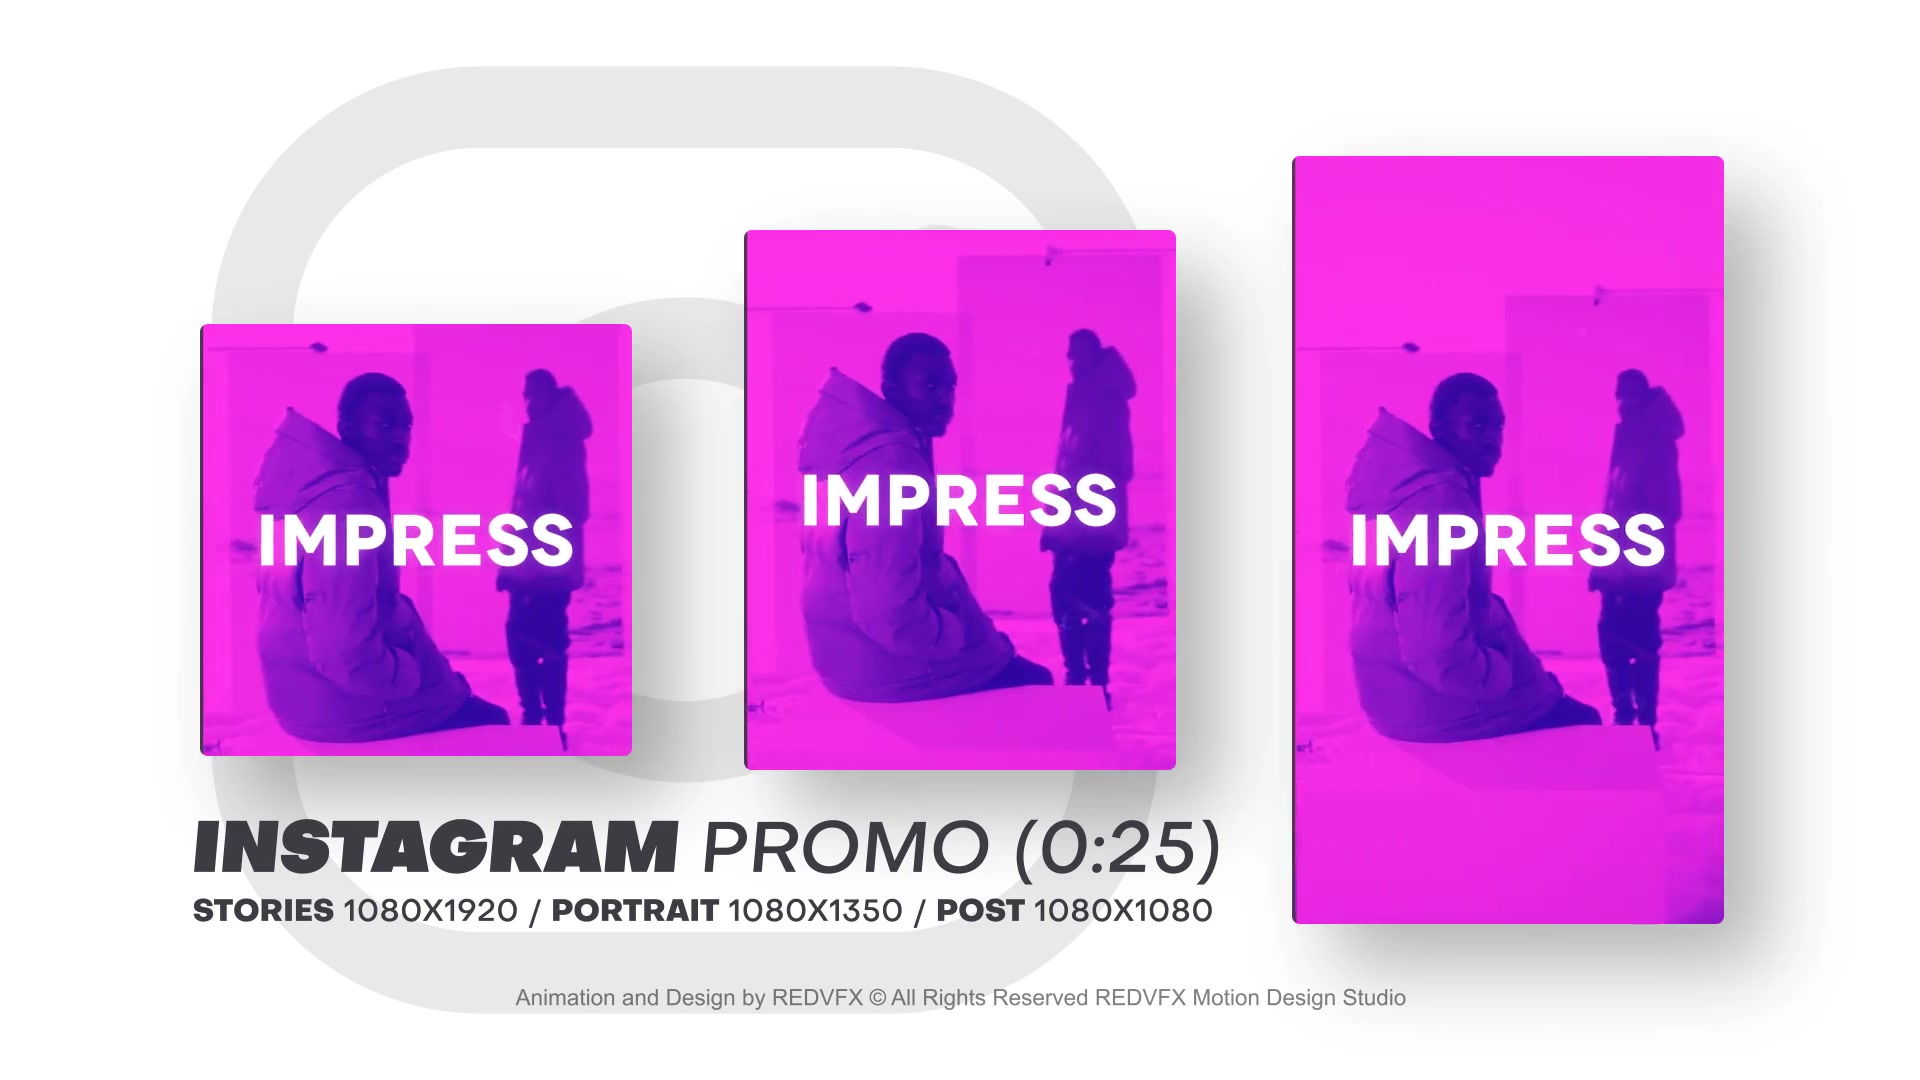 Instagram Promo for Premiere Pro Videohive 36478083 Premiere Pro Image 7